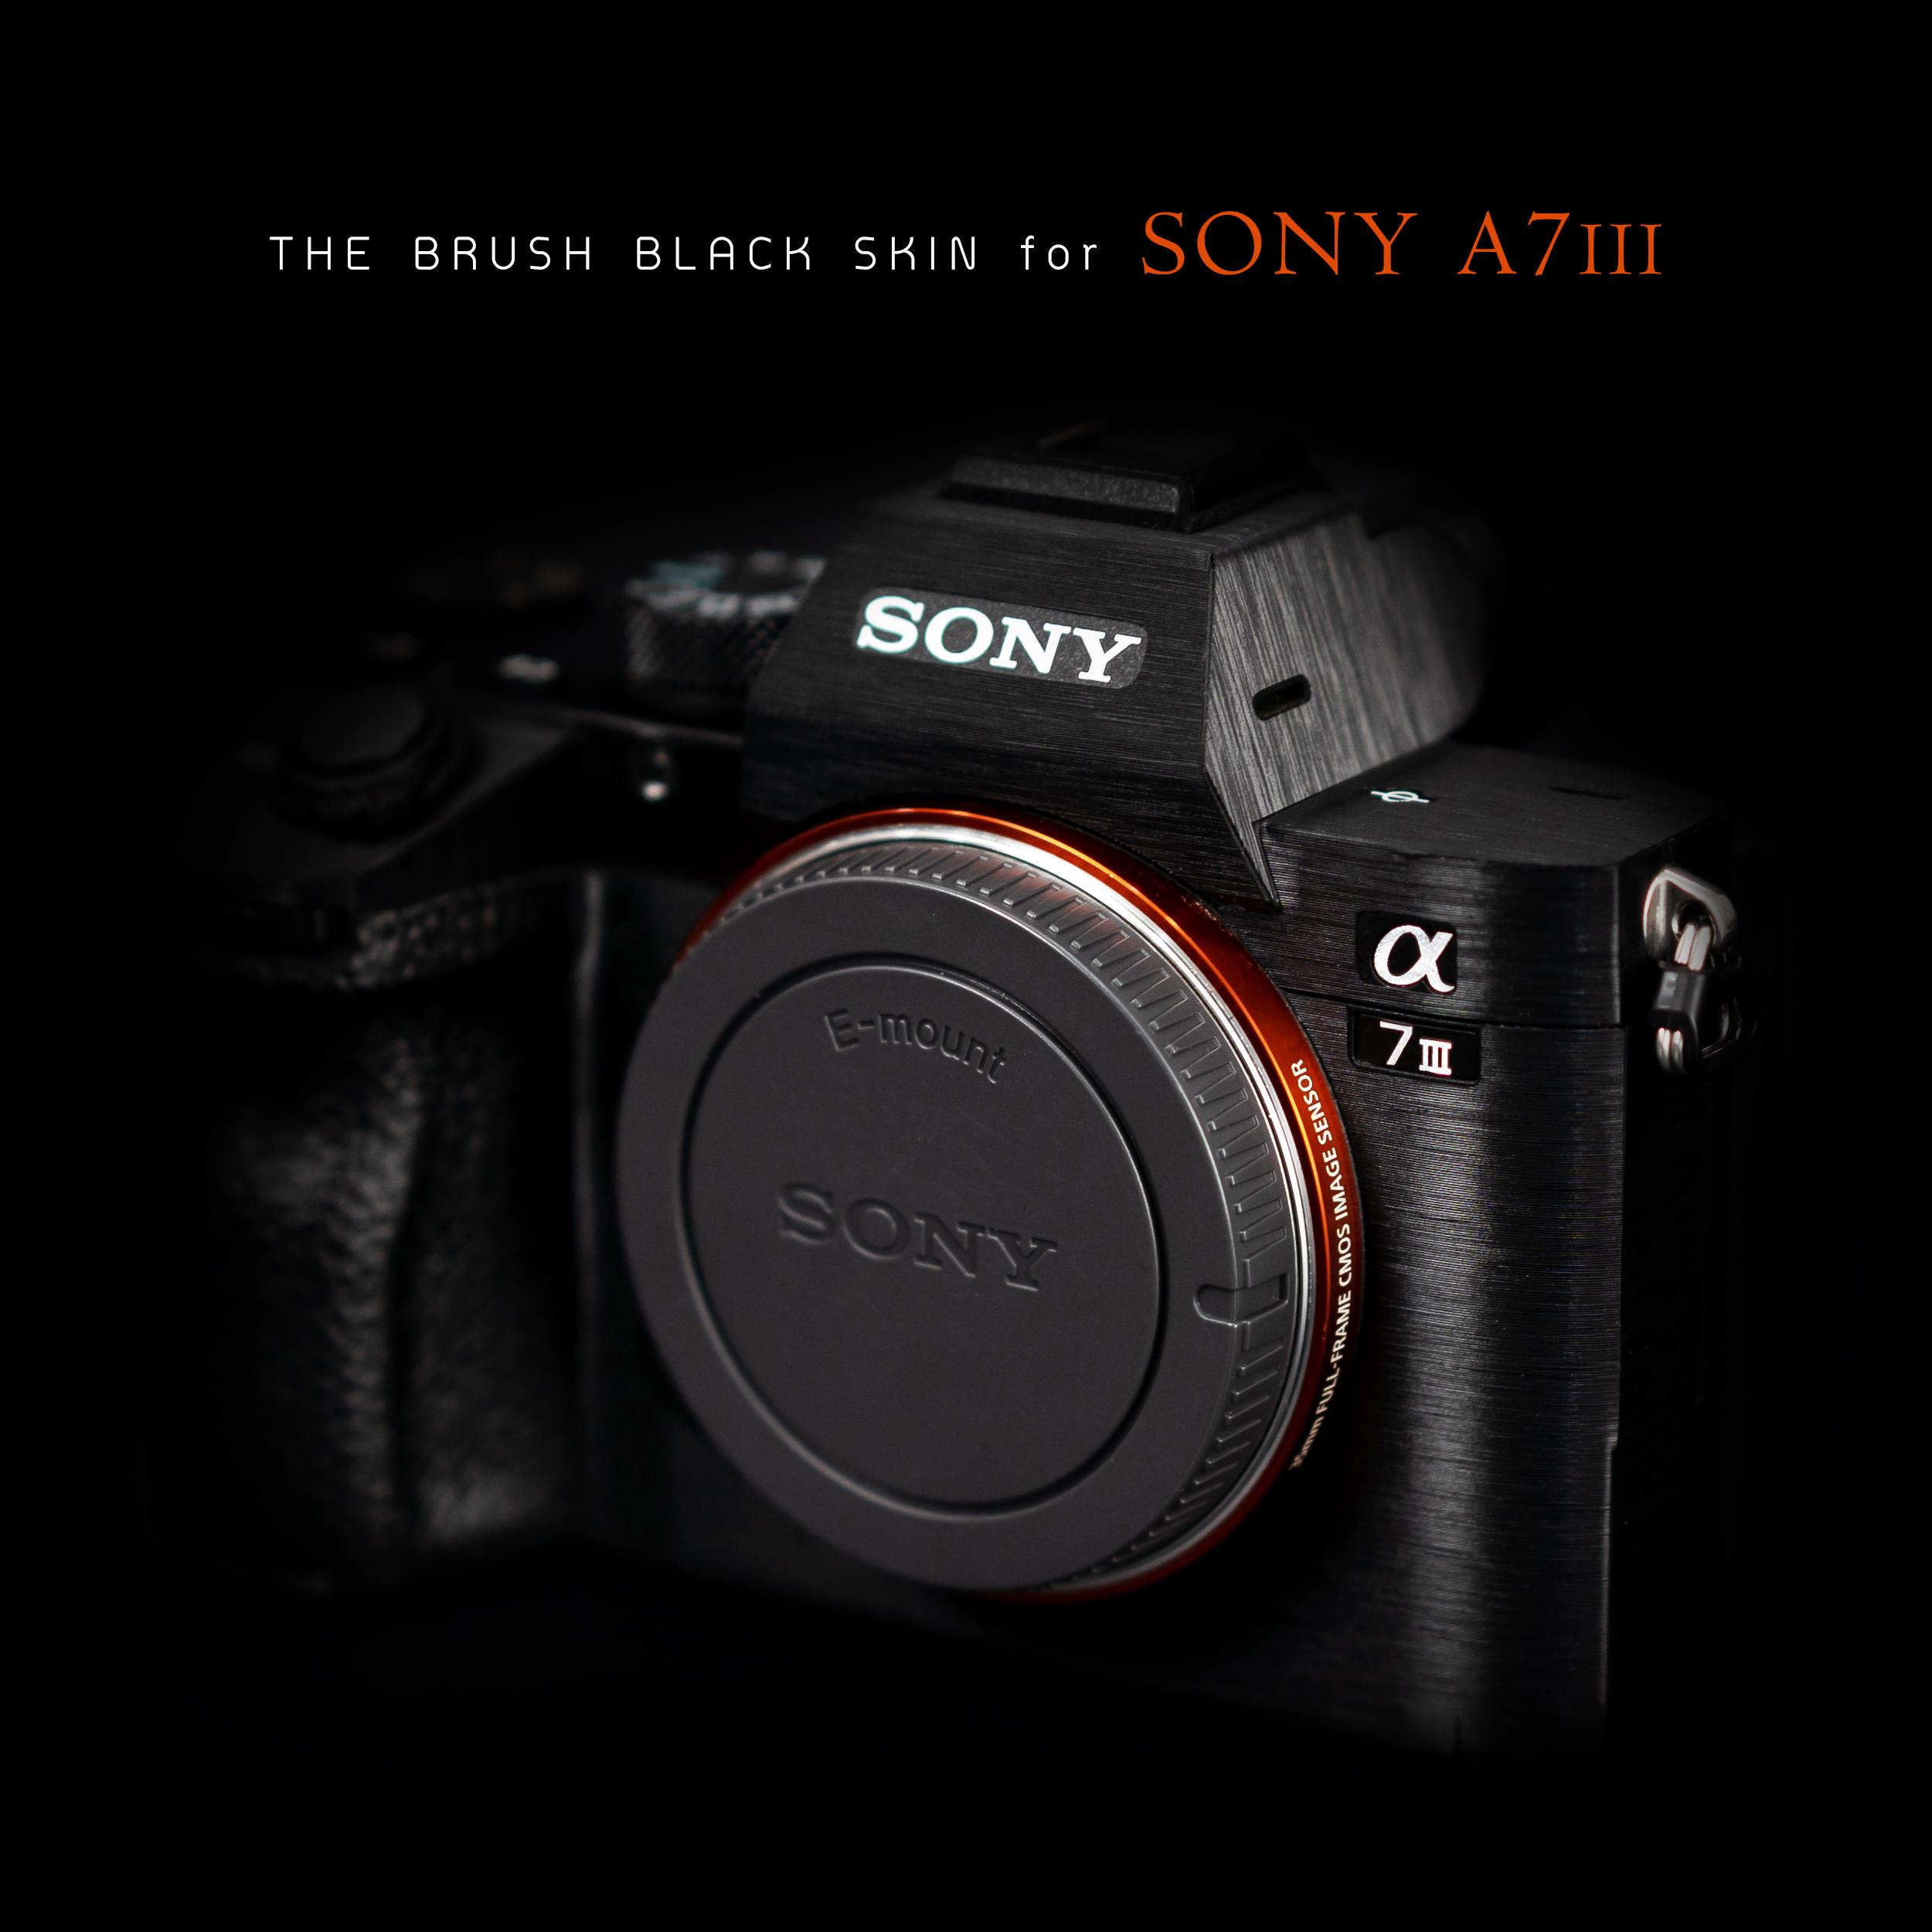 สติ๊กเกอร์ ฟิล์มกันรอย กล้อง Sony A7M3/A7R3 มีทั้งฟิล์ม 3M และ ฟิล์มมาตรฐาน (Protector film for Sony A7III)